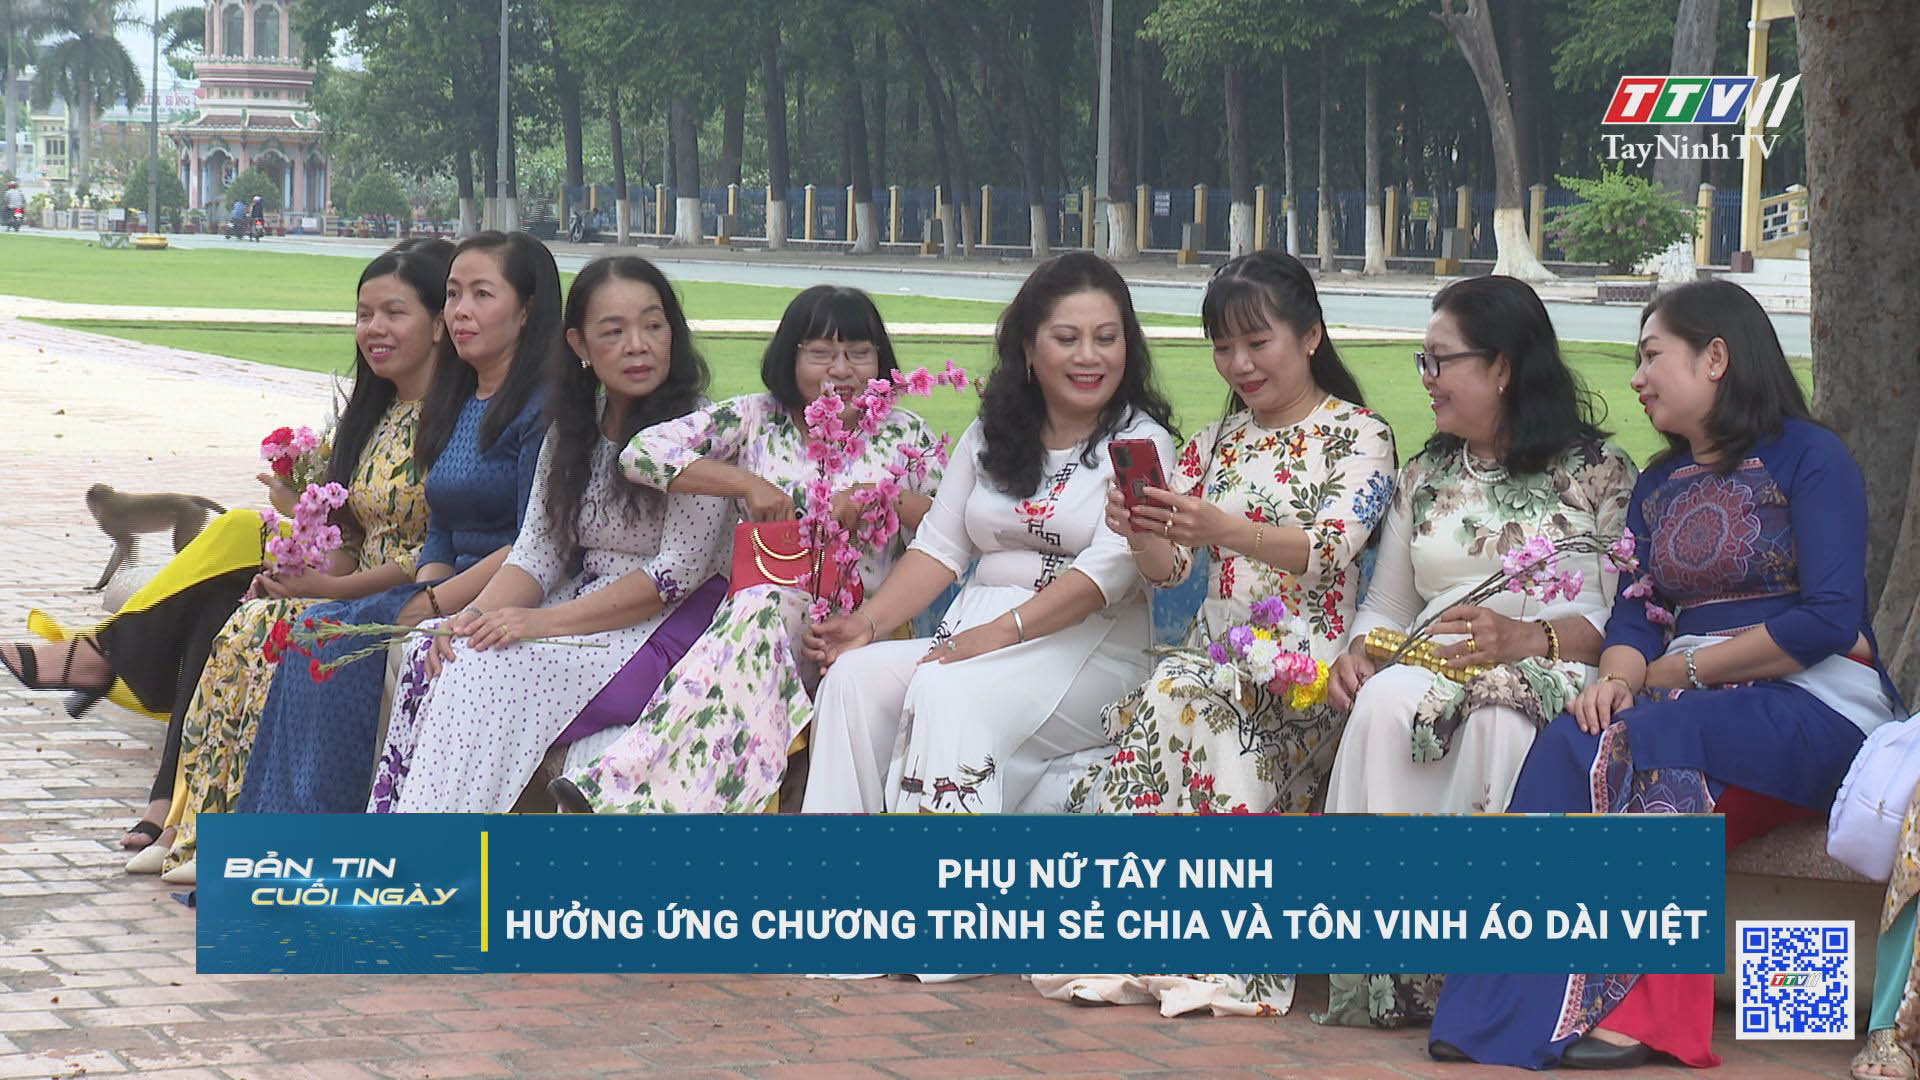 Phụ nữ Tây Ninh hưởng ứng chương trình Sẻ chia và tôn vinh áo dài Việt | TayNinhTV